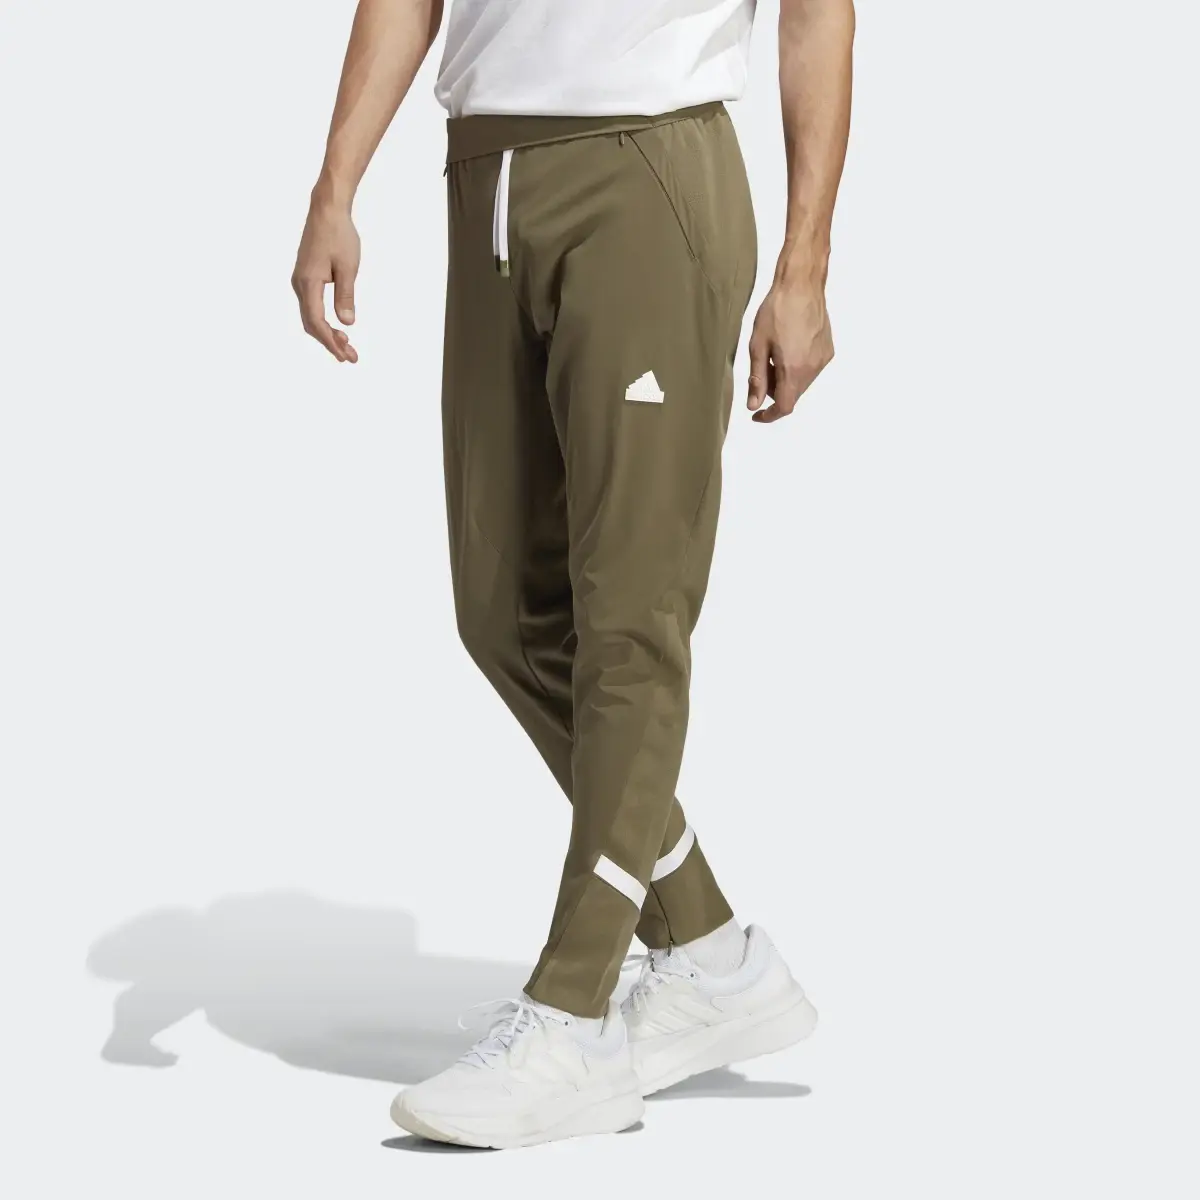 Adidas Pantaloni Designed 4 Gameday. 1